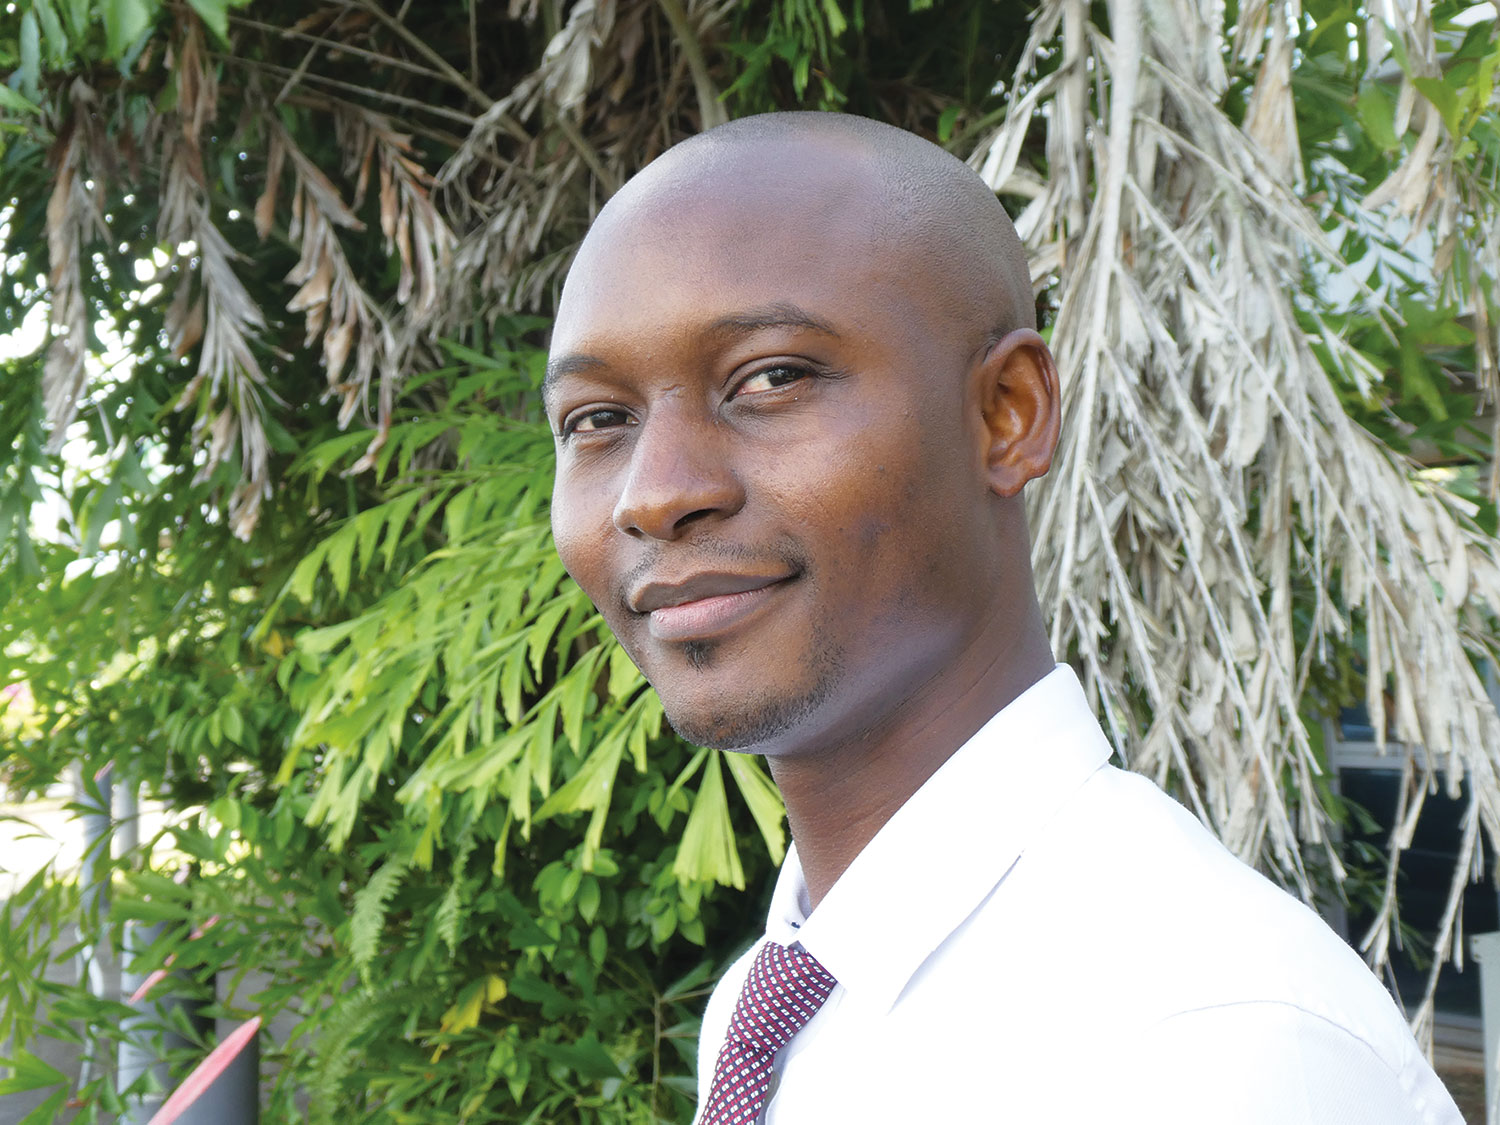 Alexandre Kondo : construire un monde où on reconnaît la dignité humaine